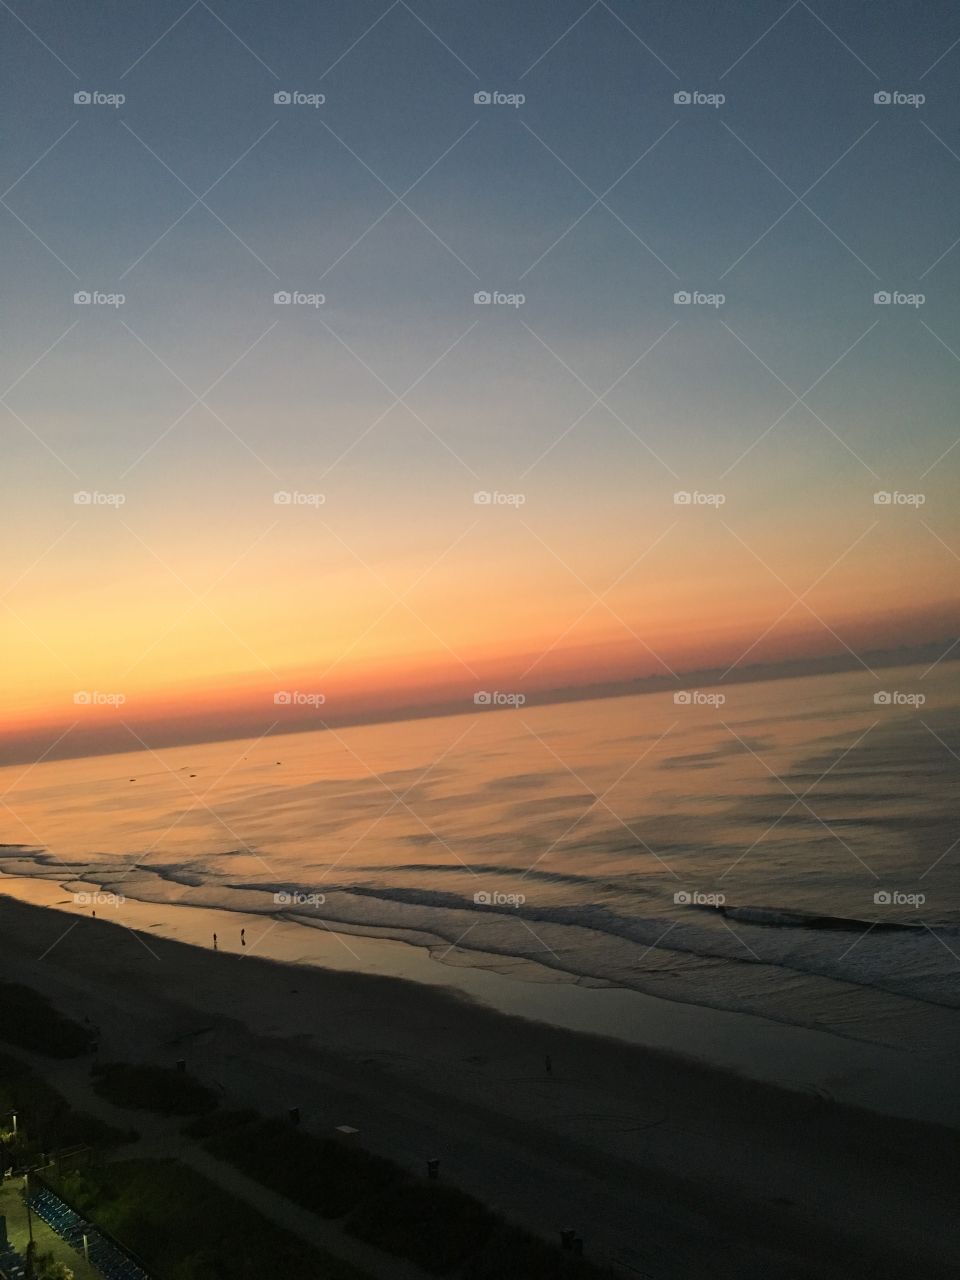 Sunrise Over the Ocean 